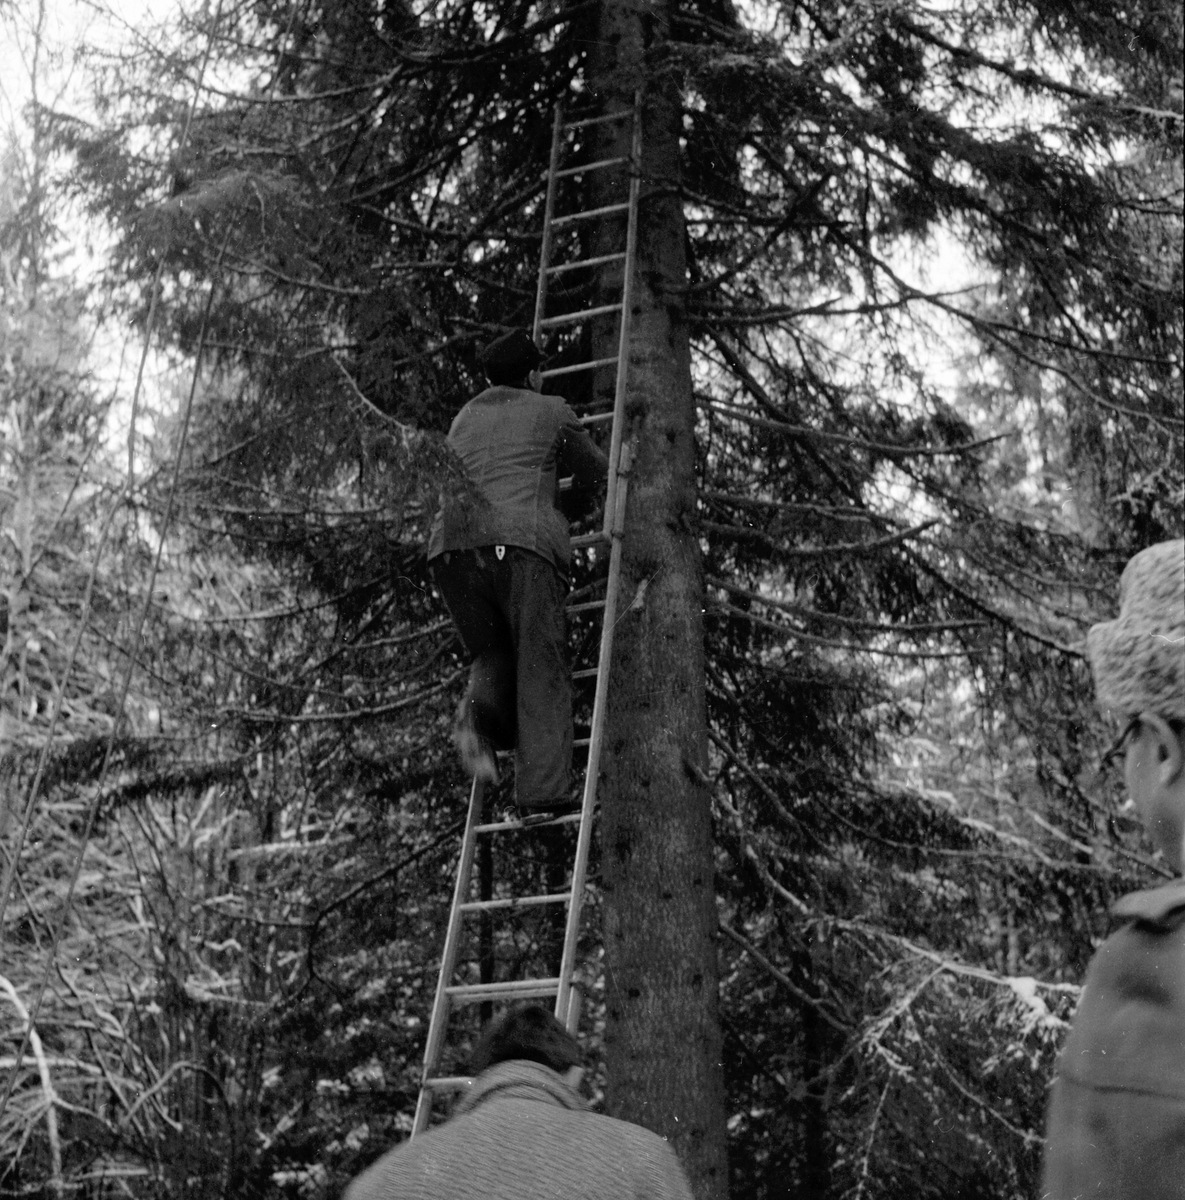 Julgranen från Nianfors.
8/12 1958